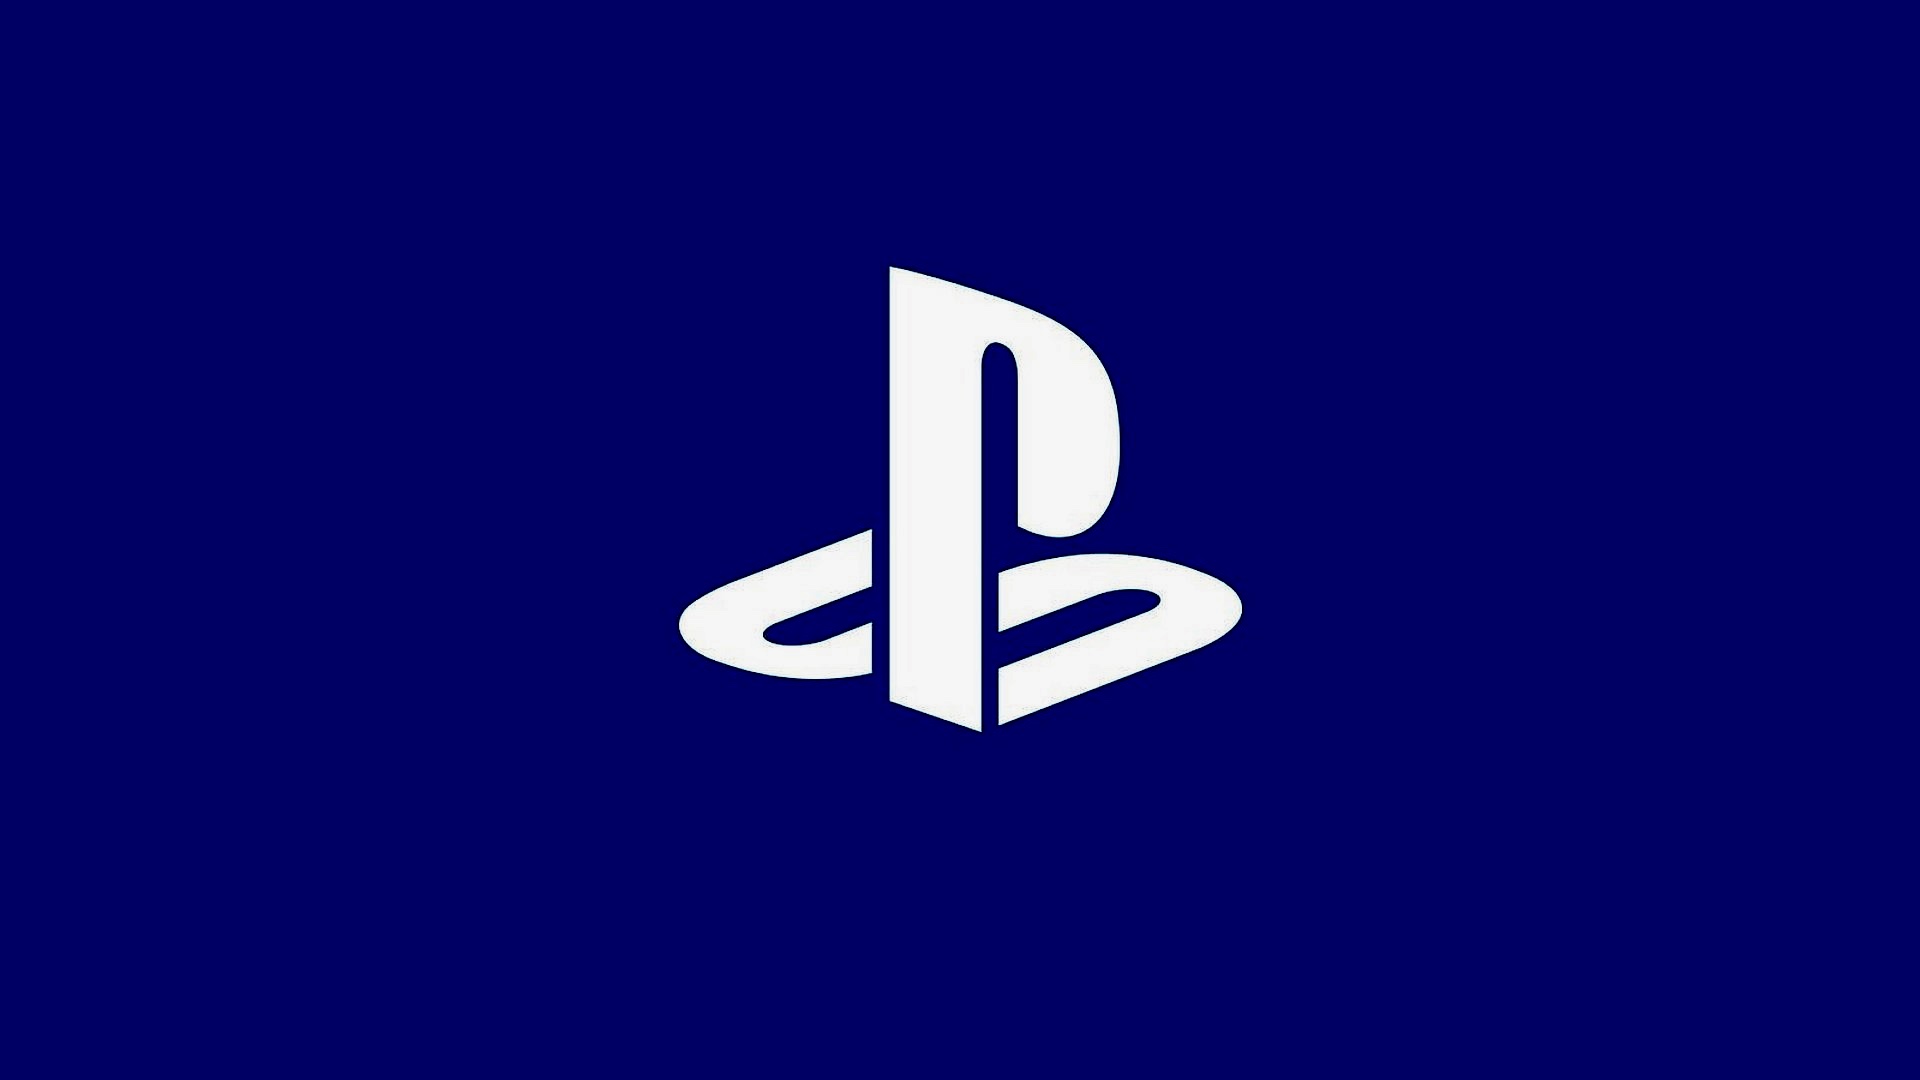 Sony vil "udforske" at bringe flere førstefestspil til pc